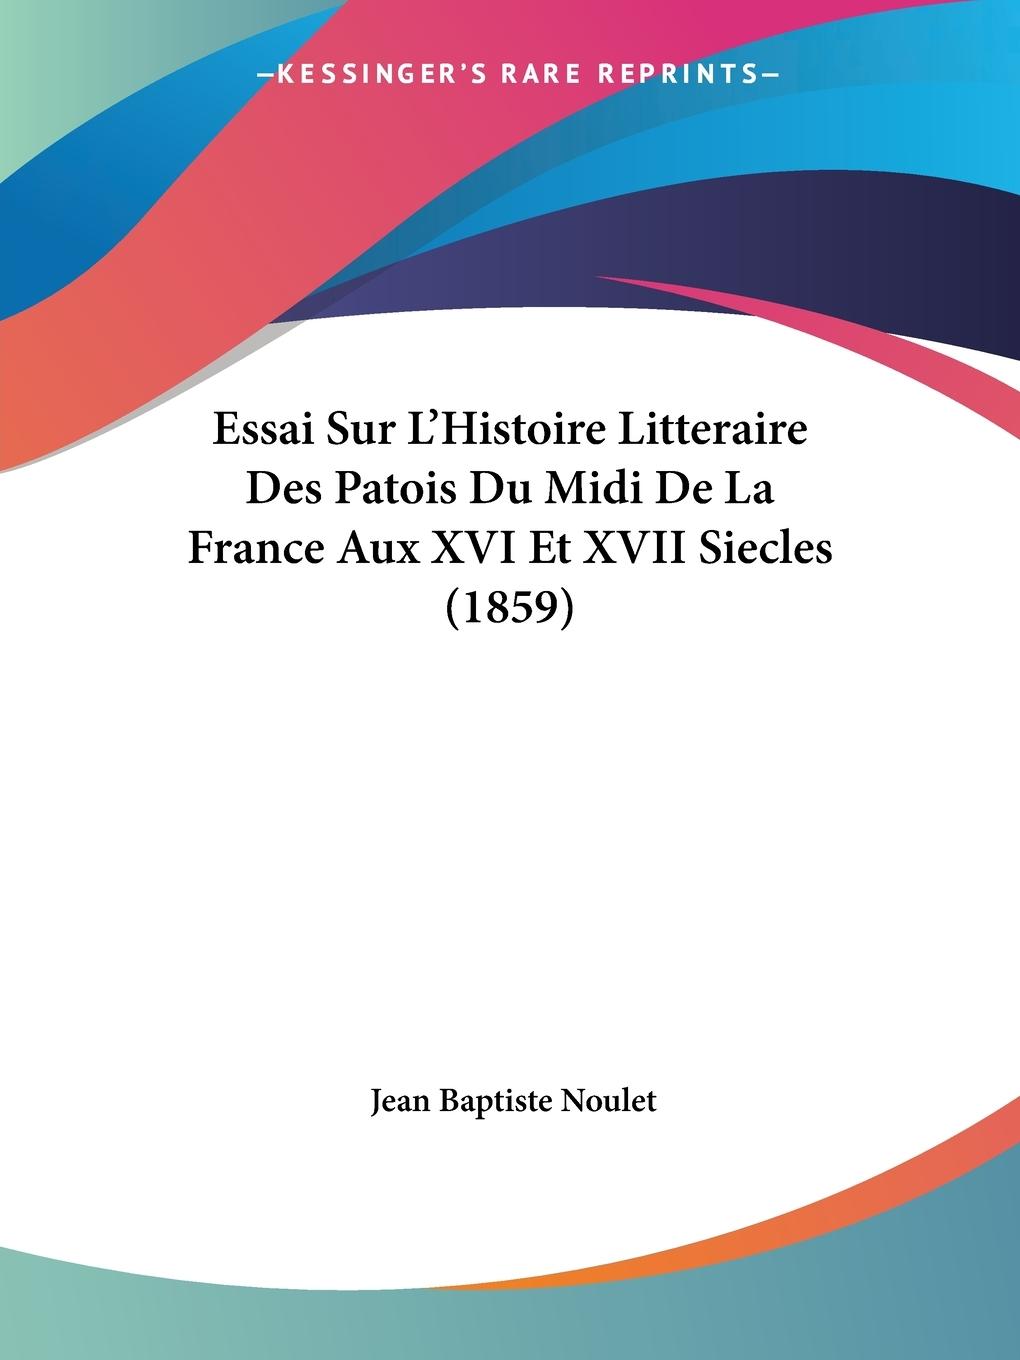 Essai Sur L Histoire Litteraire Des Patois Du Midi De La France Aux XVI Et XVII Siecles (1859) - Noulet, Jean Baptiste